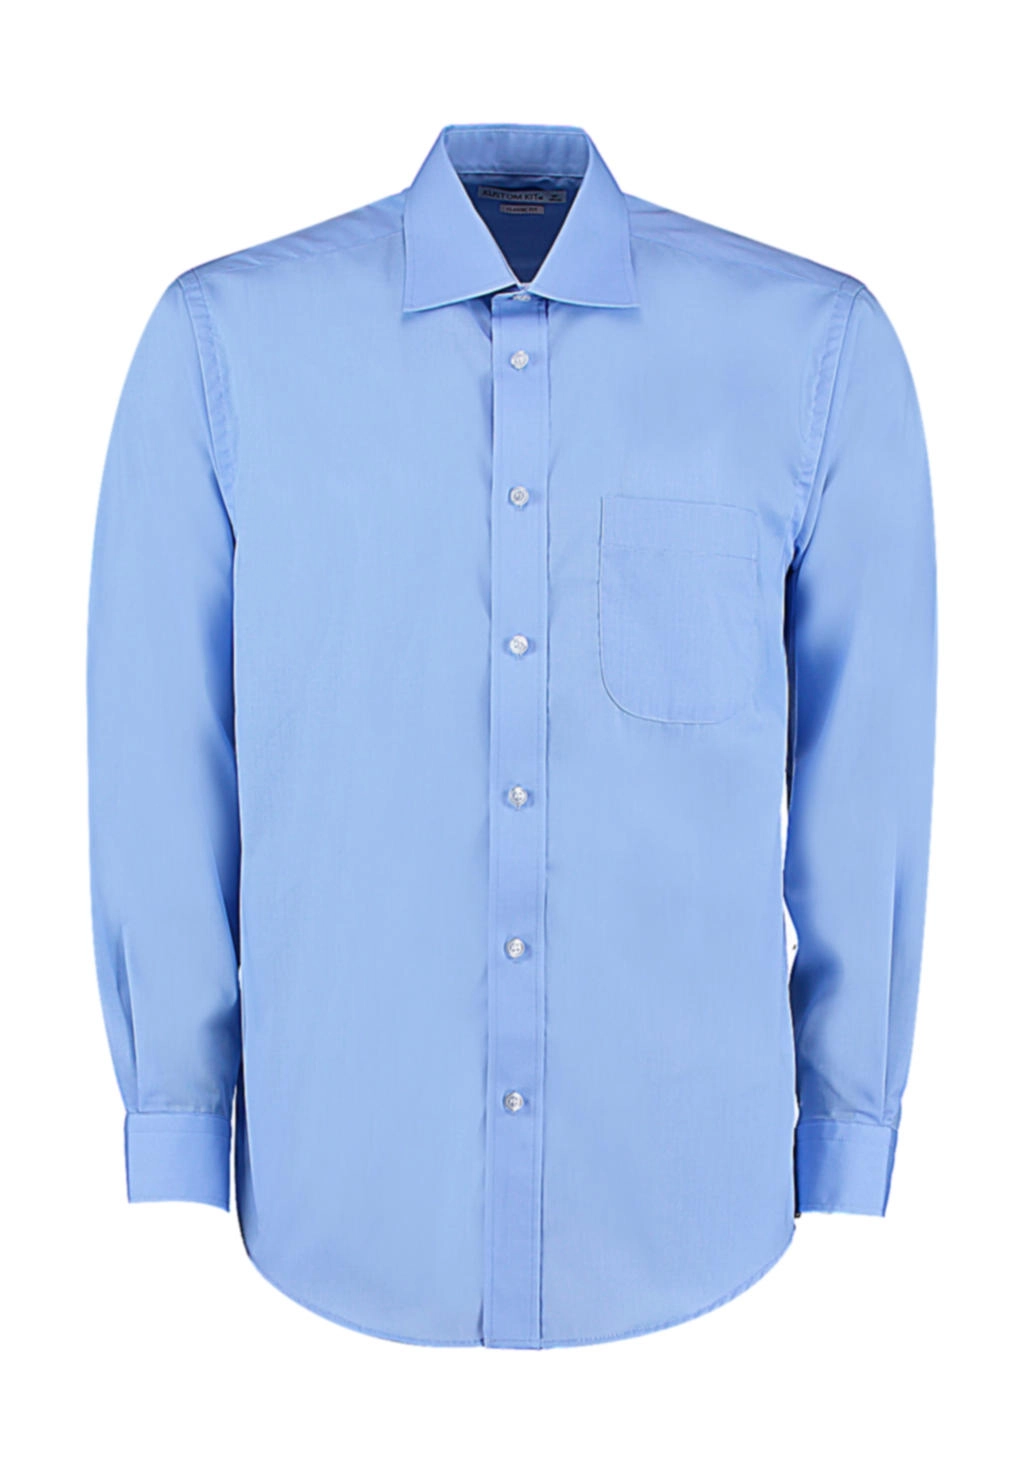 Classic Fit Business Shirt zum Besticken und Bedrucken in der Farbe Light Blue mit Ihren Logo, Schriftzug oder Motiv.